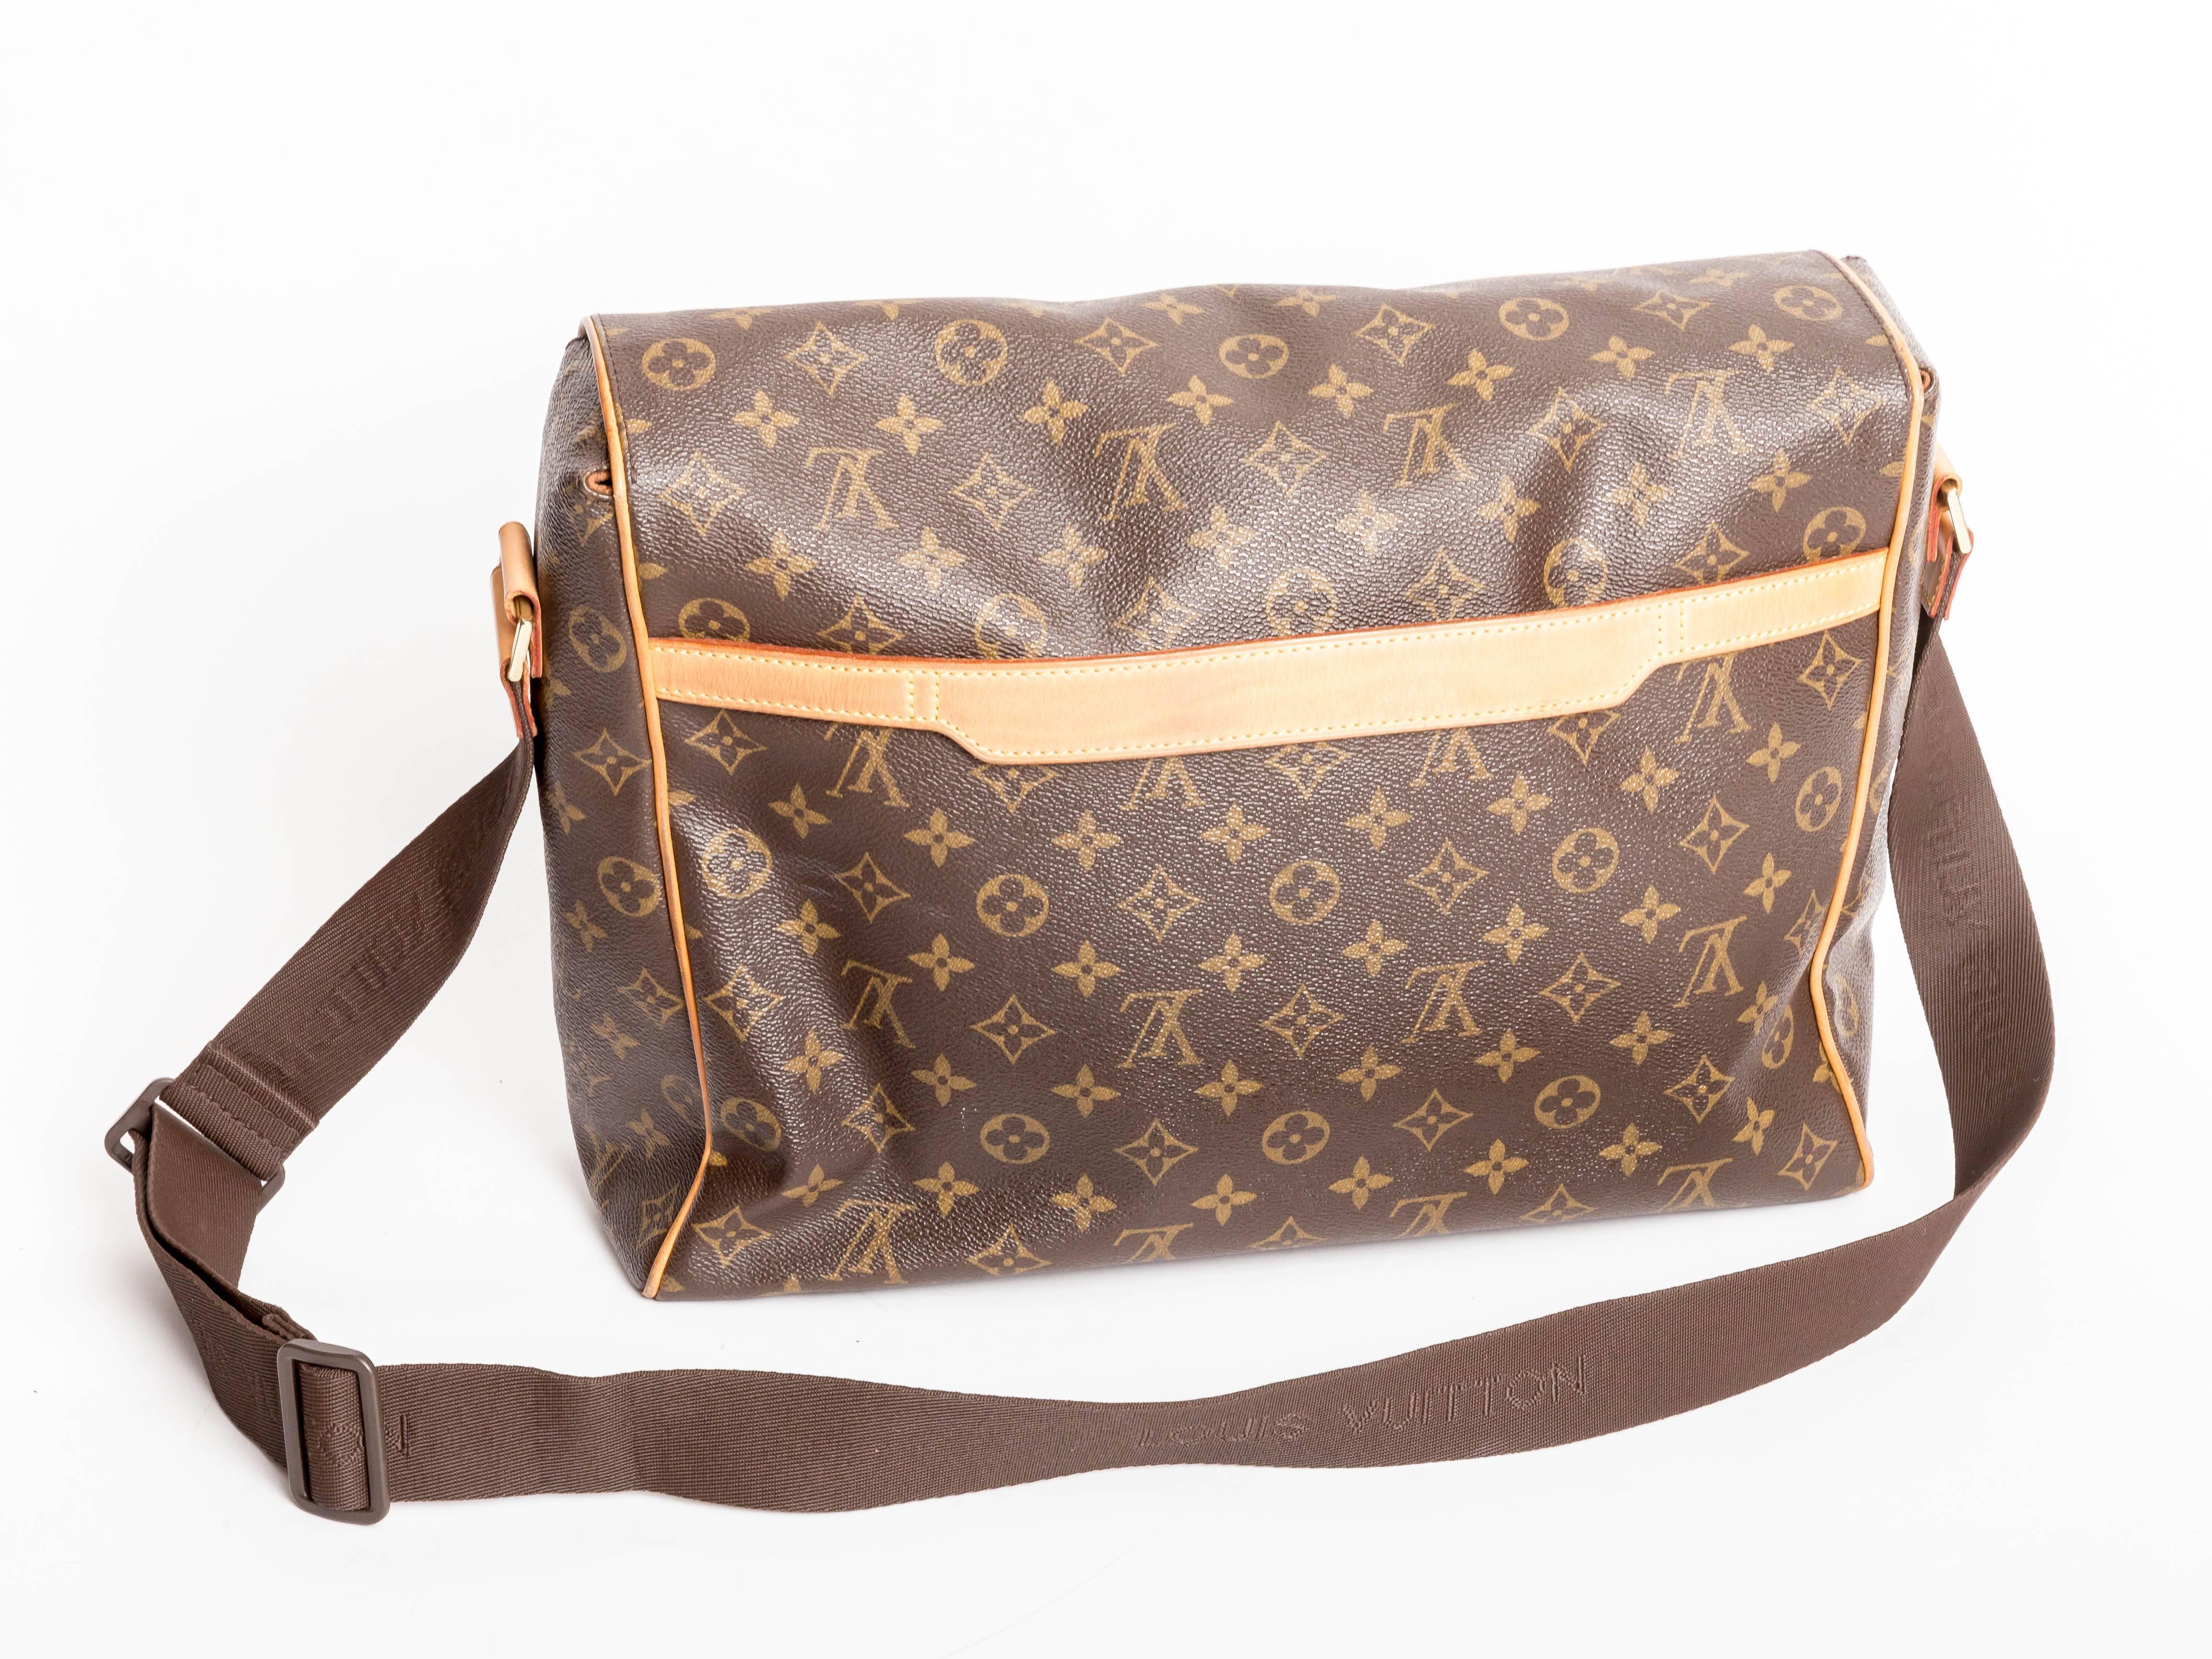 Fabulous Louis Vuitton Laptop Messenger Crossbody Bag
Excellent condition